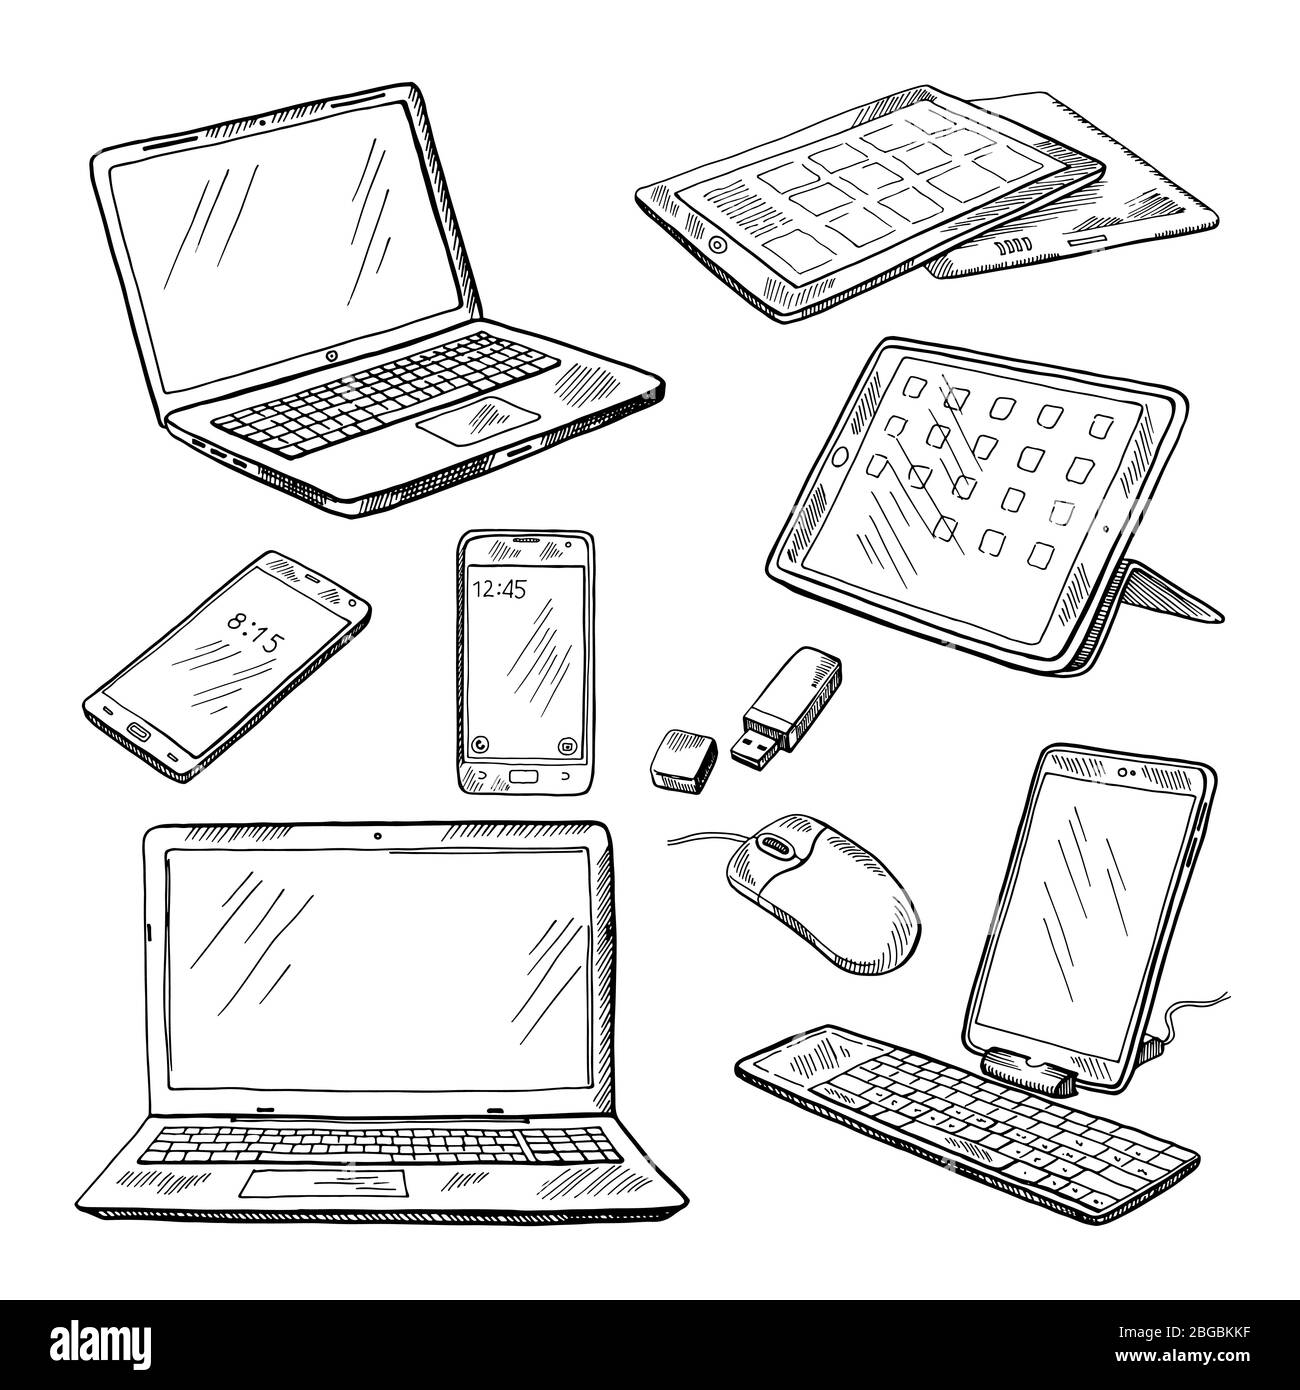 Illustrazioni di diversi dispositivi laptop, smartphone, tablet, pc e altro. Set di immagini vettoriali Illustrazione Vettoriale